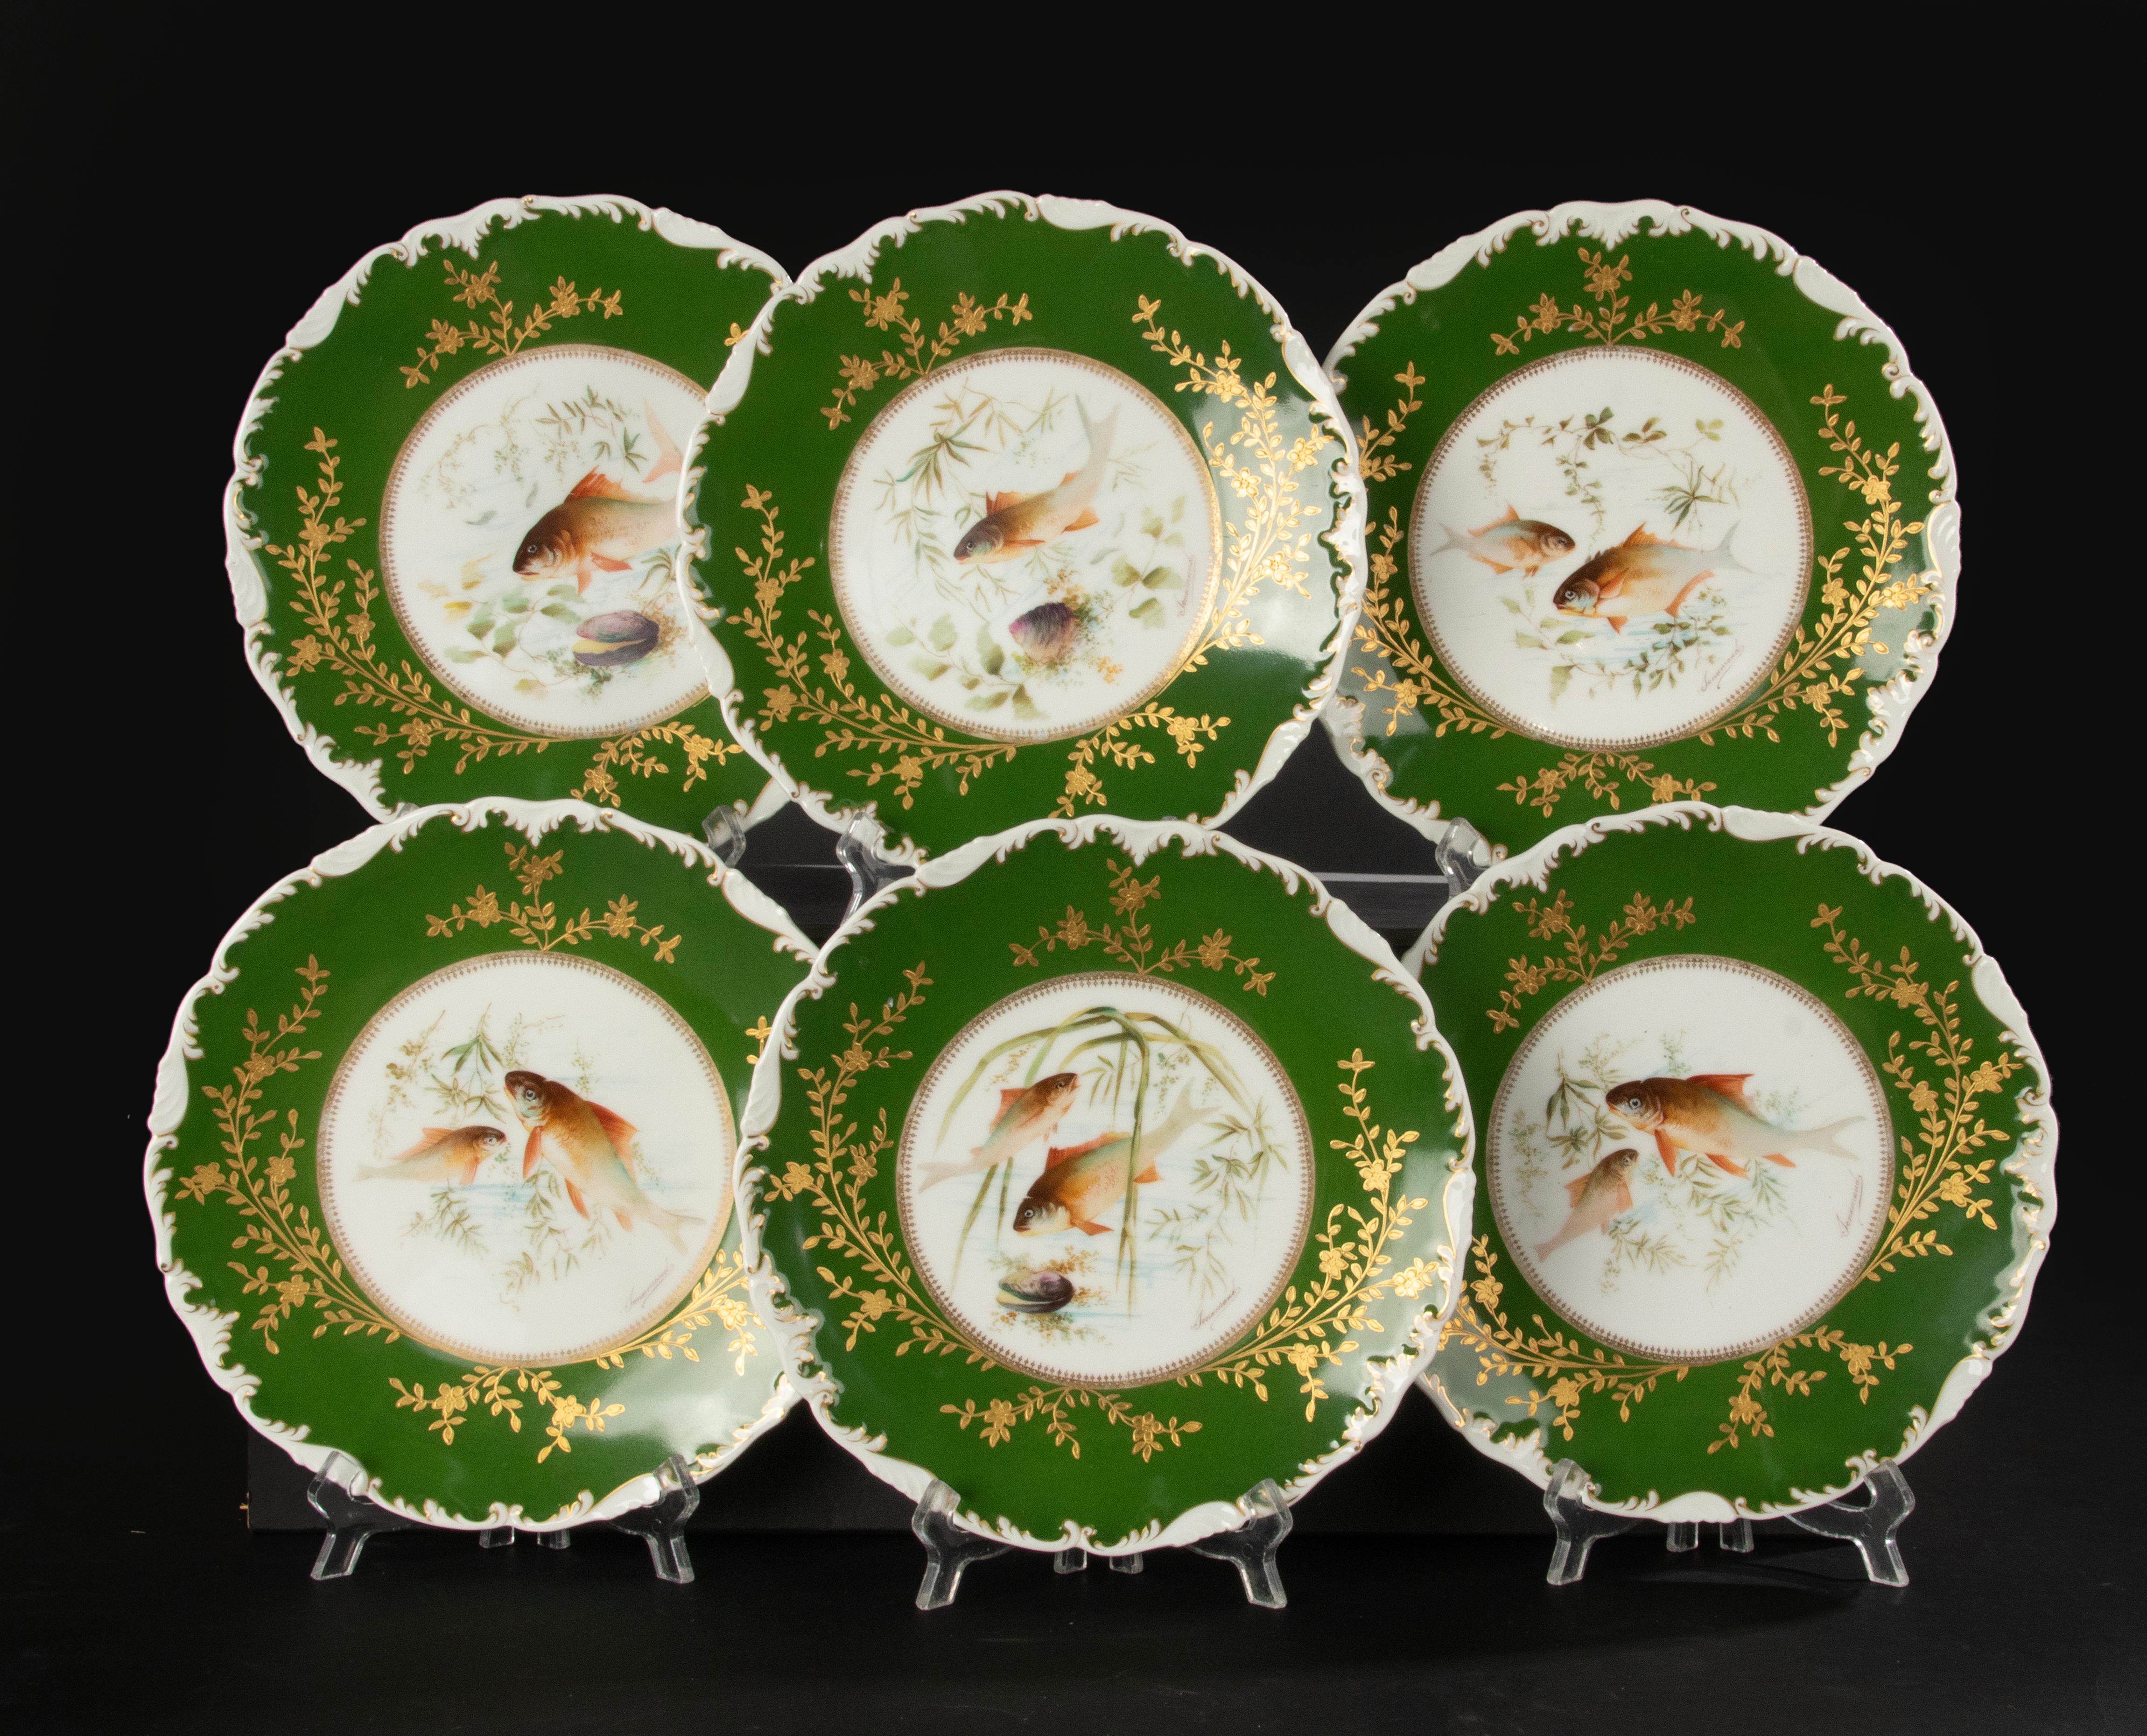 Un superbe ensemble de 6 assiettes à poisson en porcelaine, fabriquées par la marque française Limoges. Les plaques datent d'environ 1900-1910. Ils sont décorés et signés par Tressemanes & Vogt. 
Les plaques sont en très bon état. Il n'y a pas